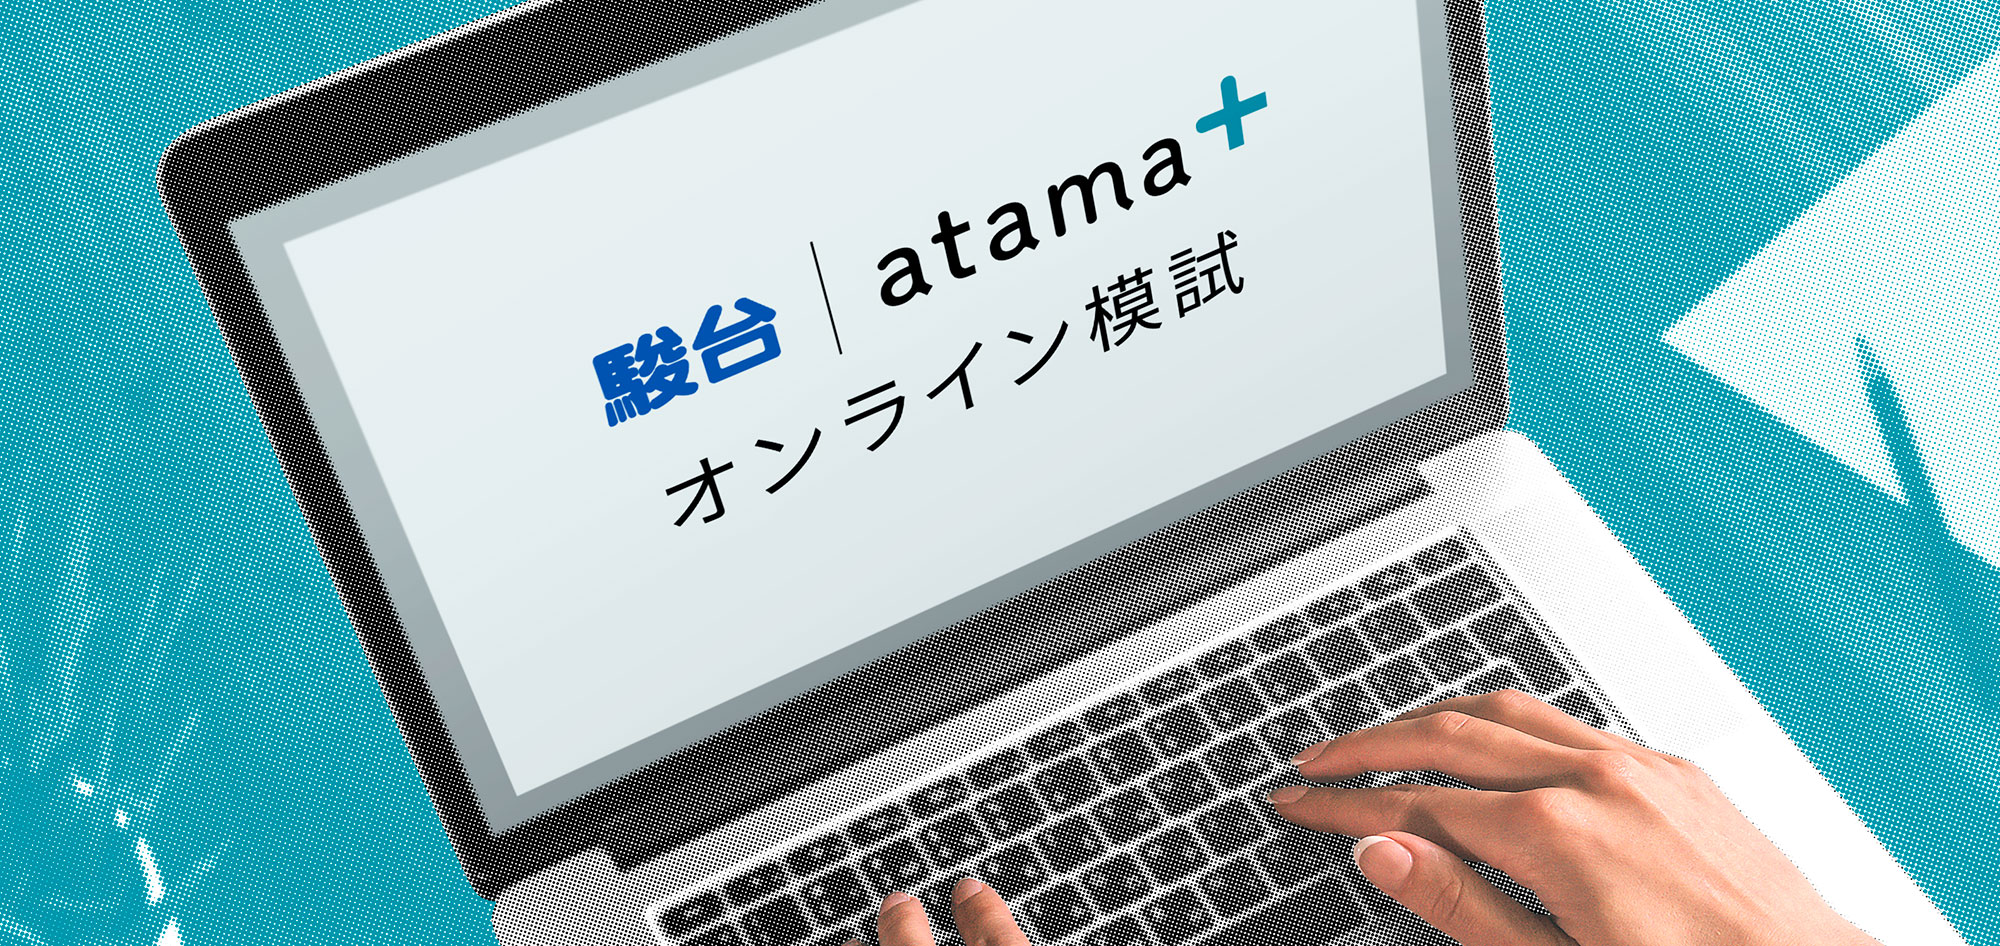 駿台atama＋オンライン模試